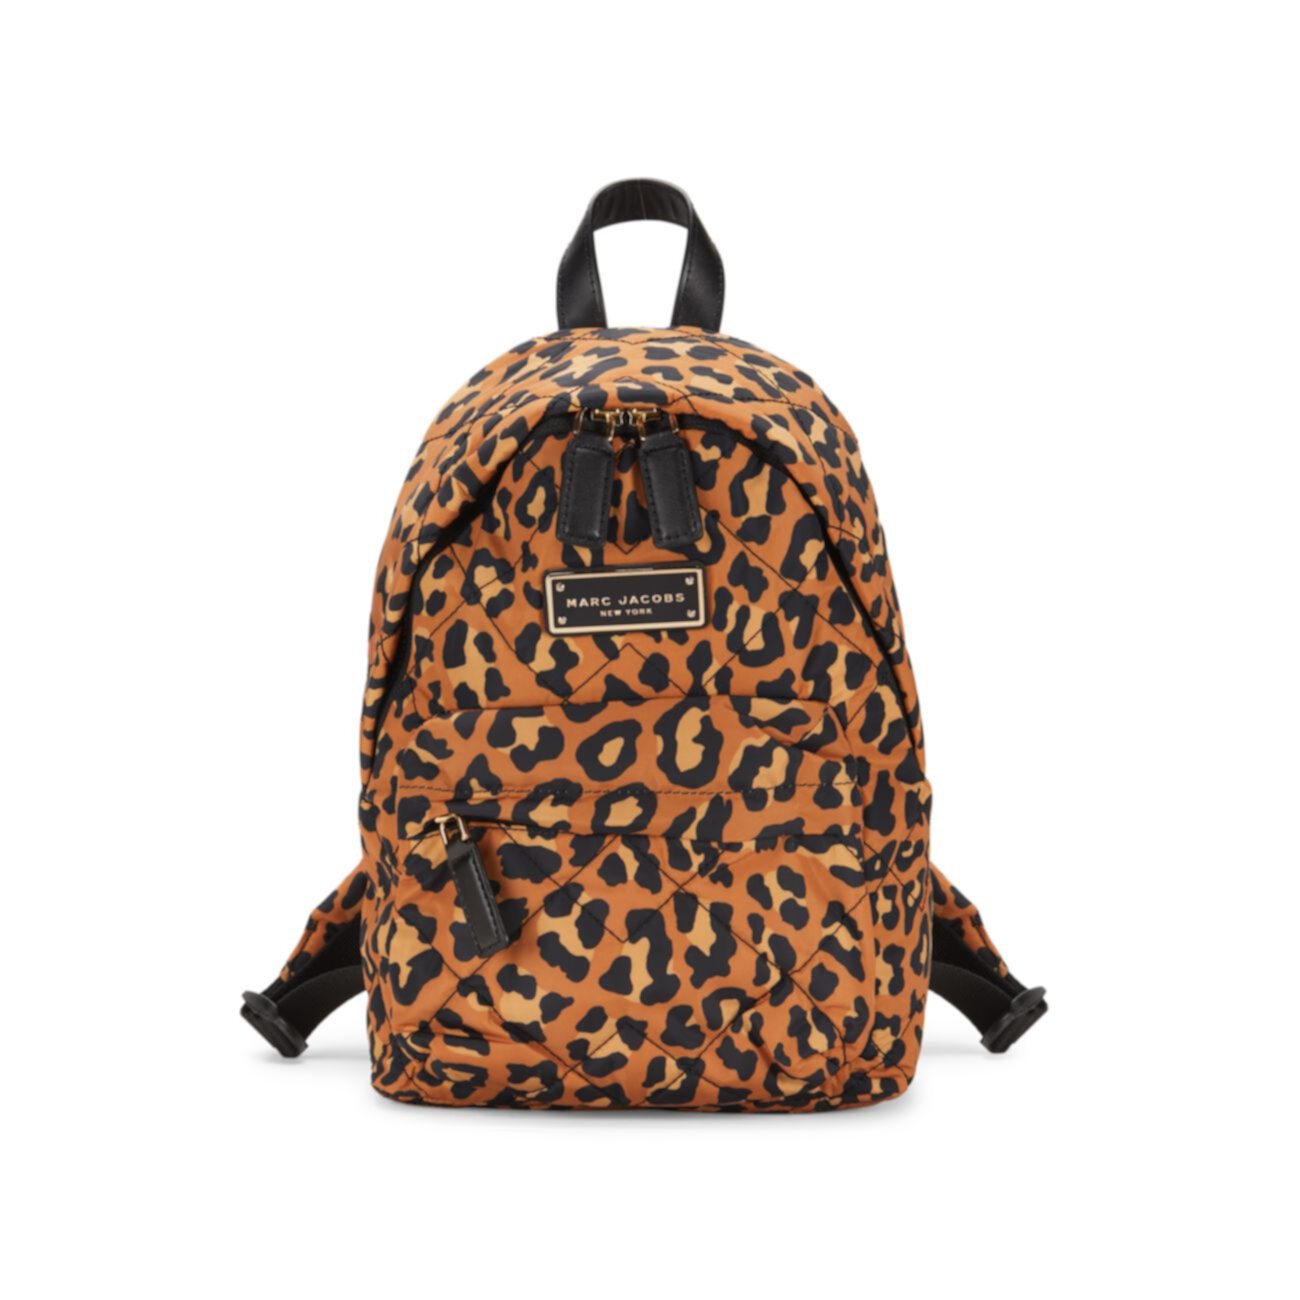 Миниатюрный рюкзак с леопардовым принтом Marc Jacobs